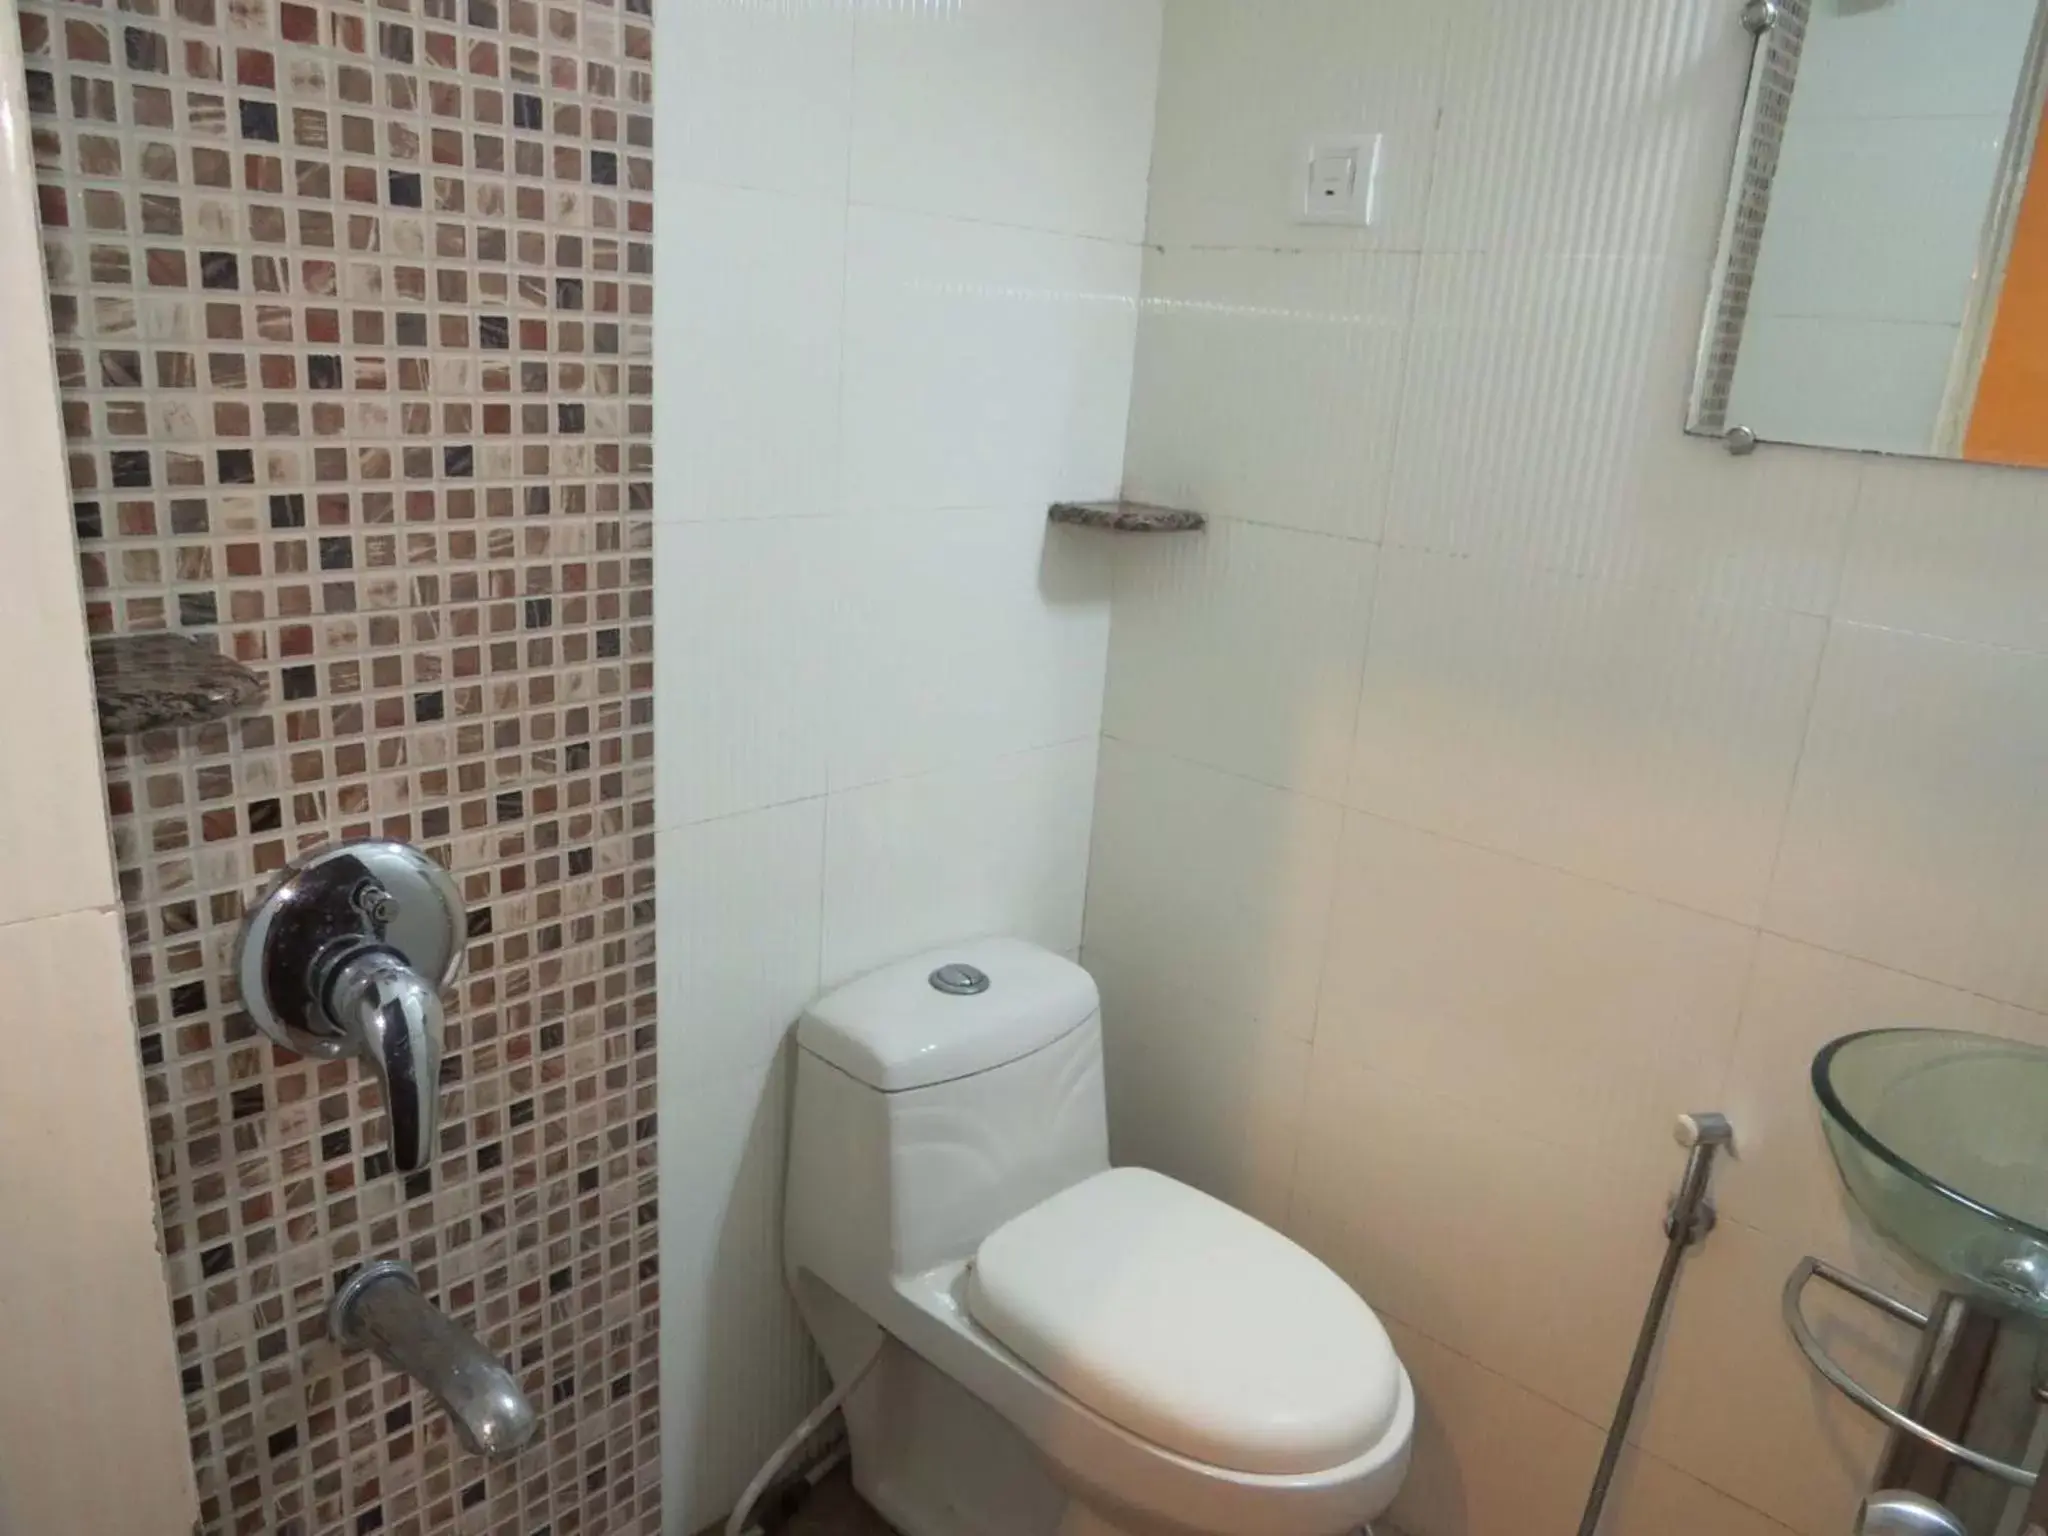 Bathroom in Smyle Inn - Best Value Hotel near New Delhi Station